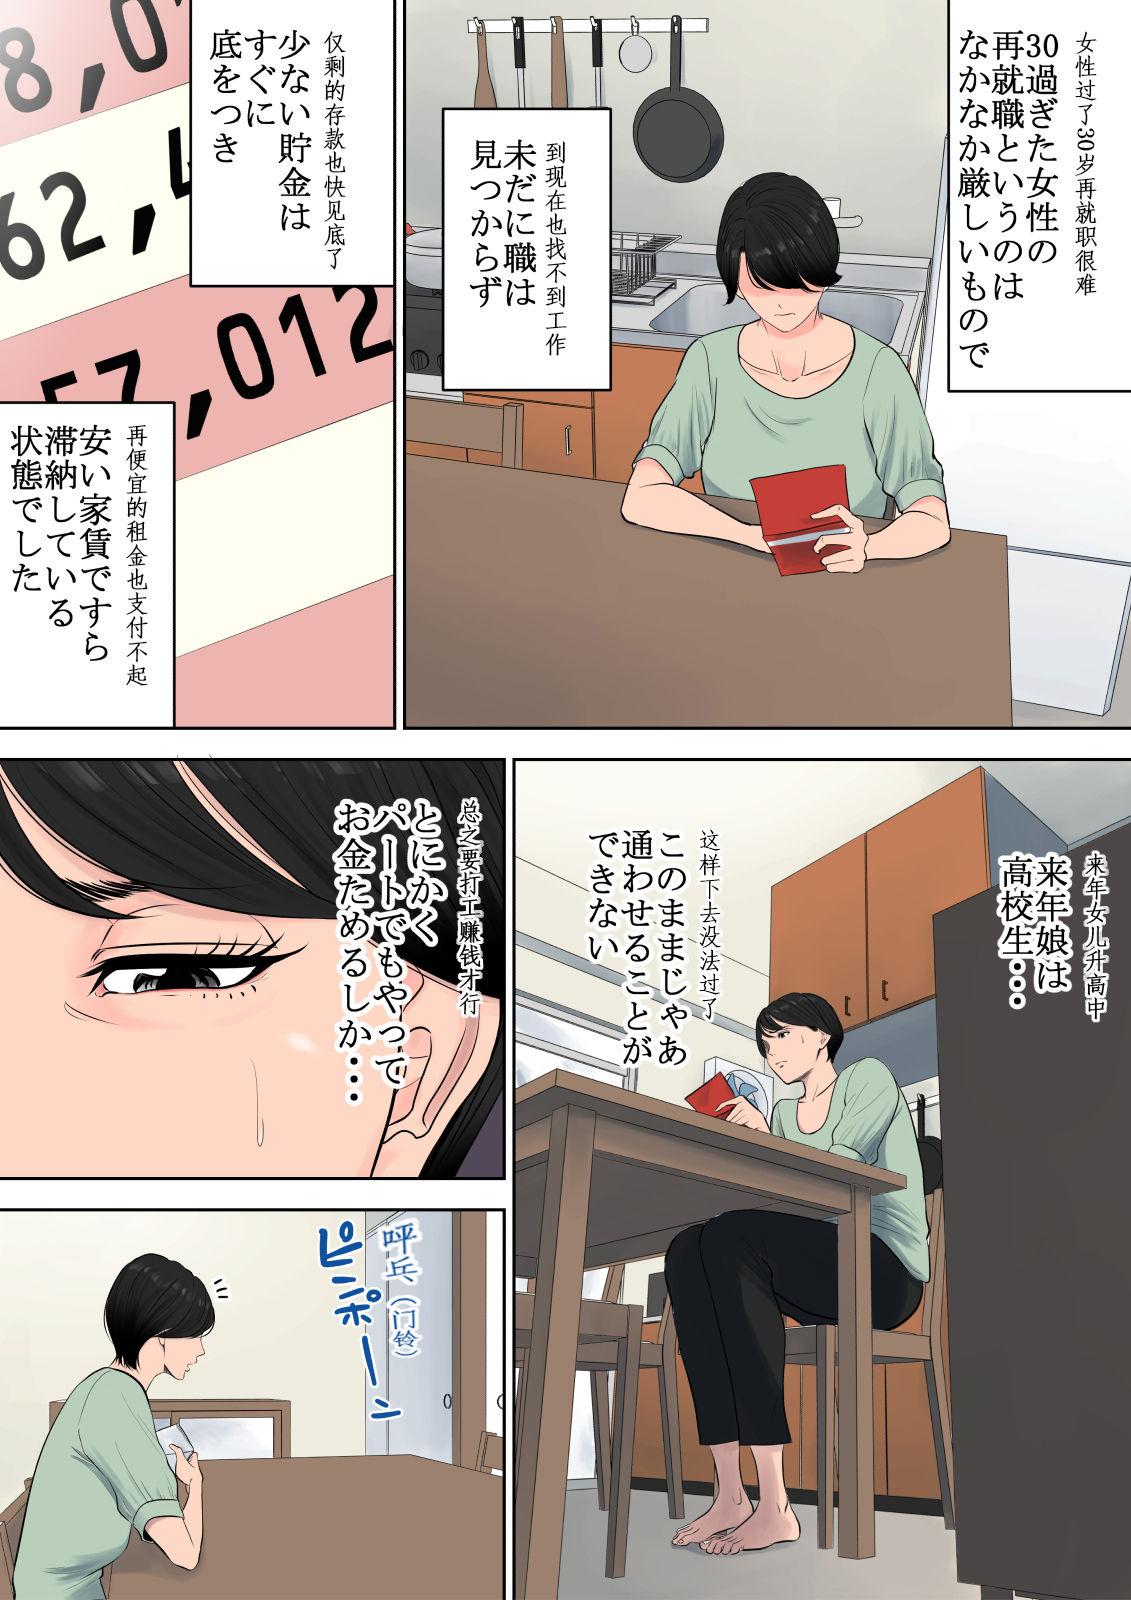 Boquete Tsubakigaoka Danchi no Kanrinin From - Page 4